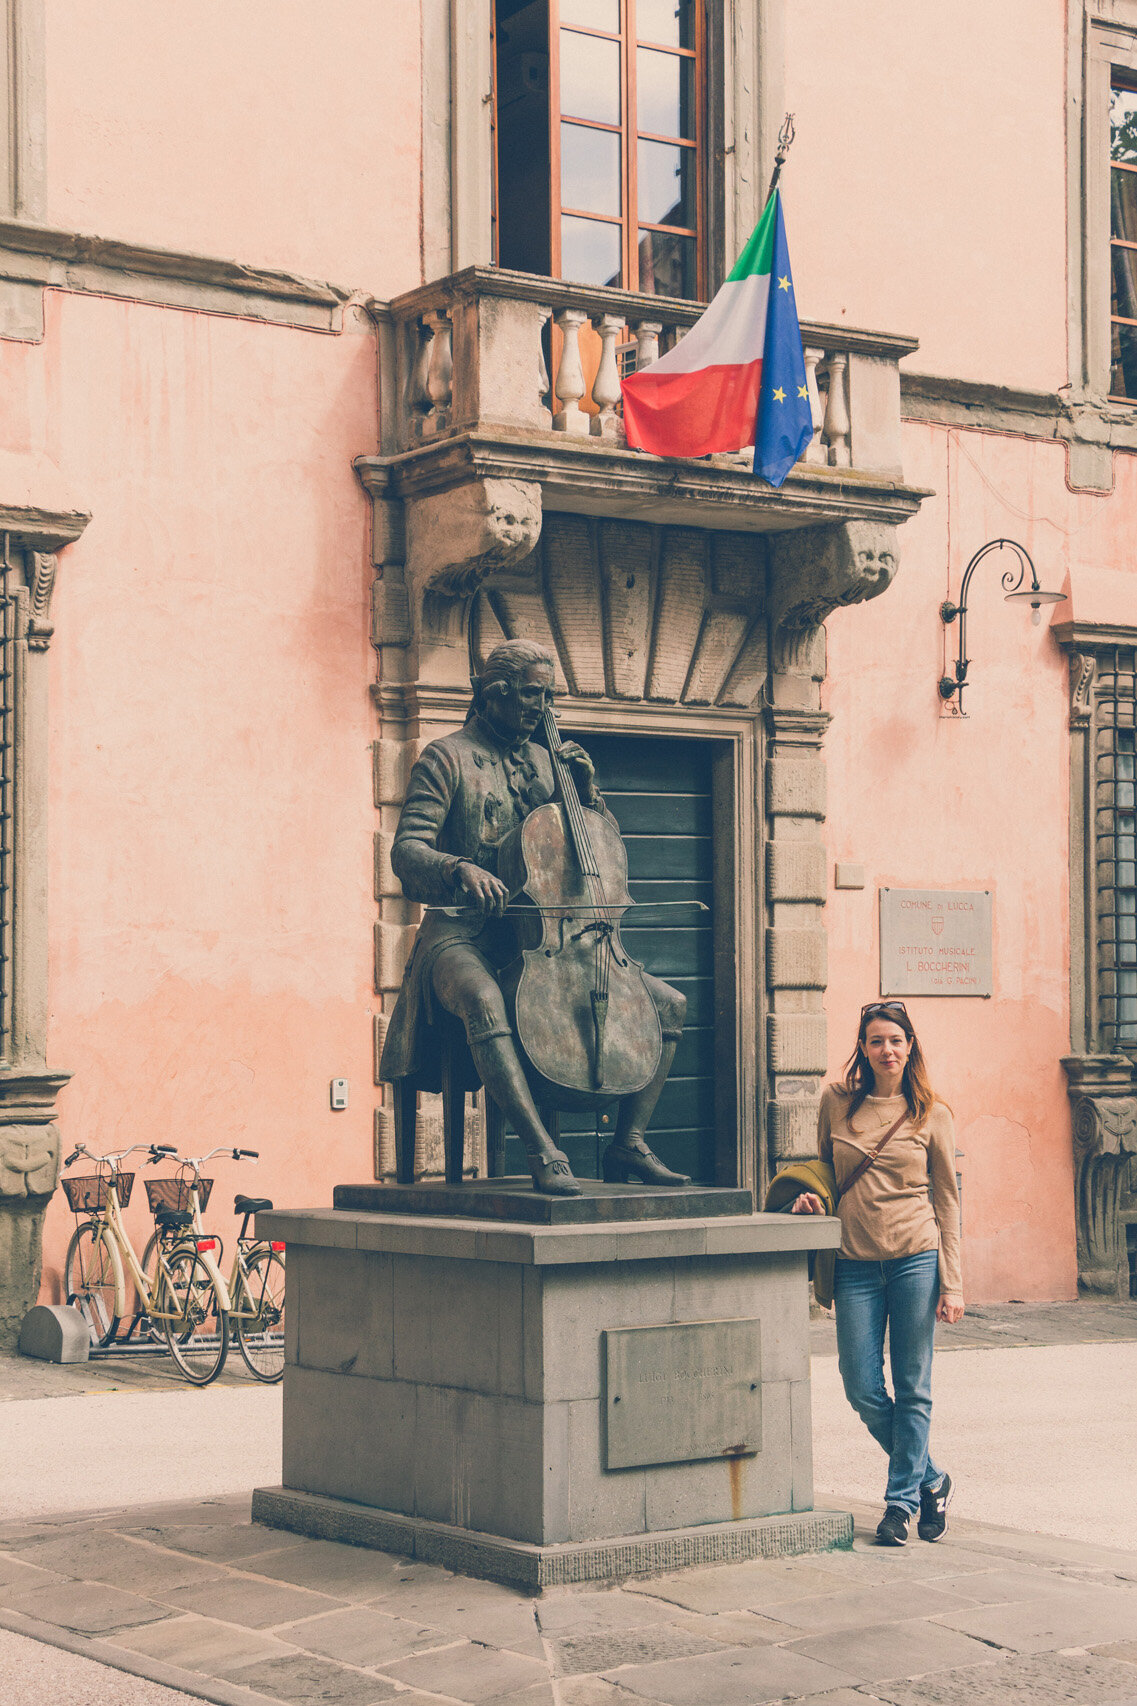 Luigi Boccherini statue, Lucca